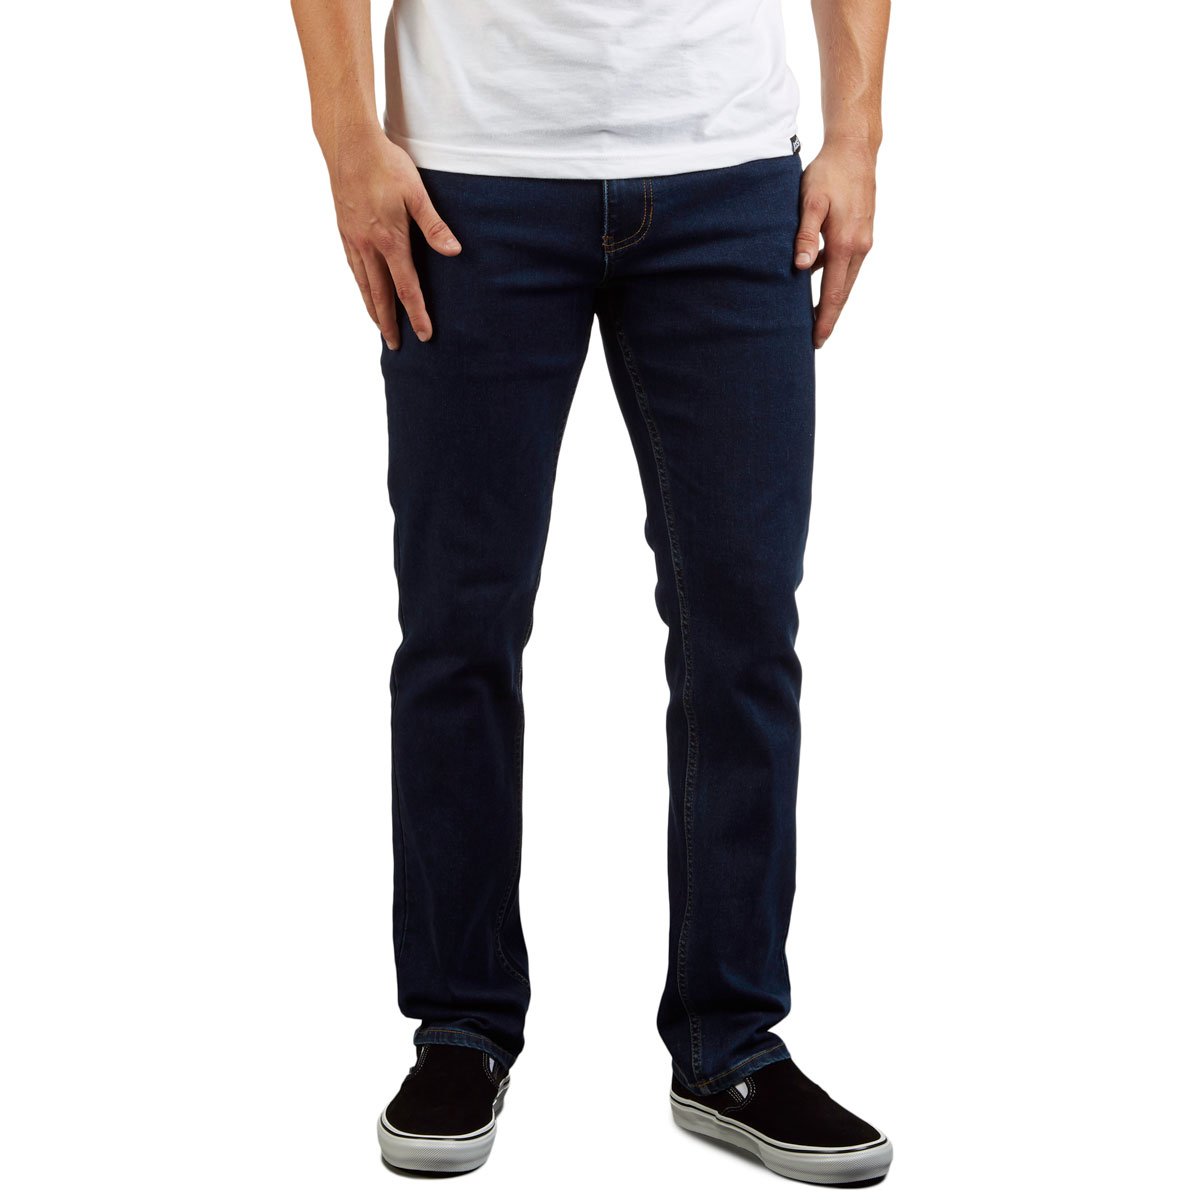 CCS Standard Plus Slim Denim Jeans - Indigo image 1